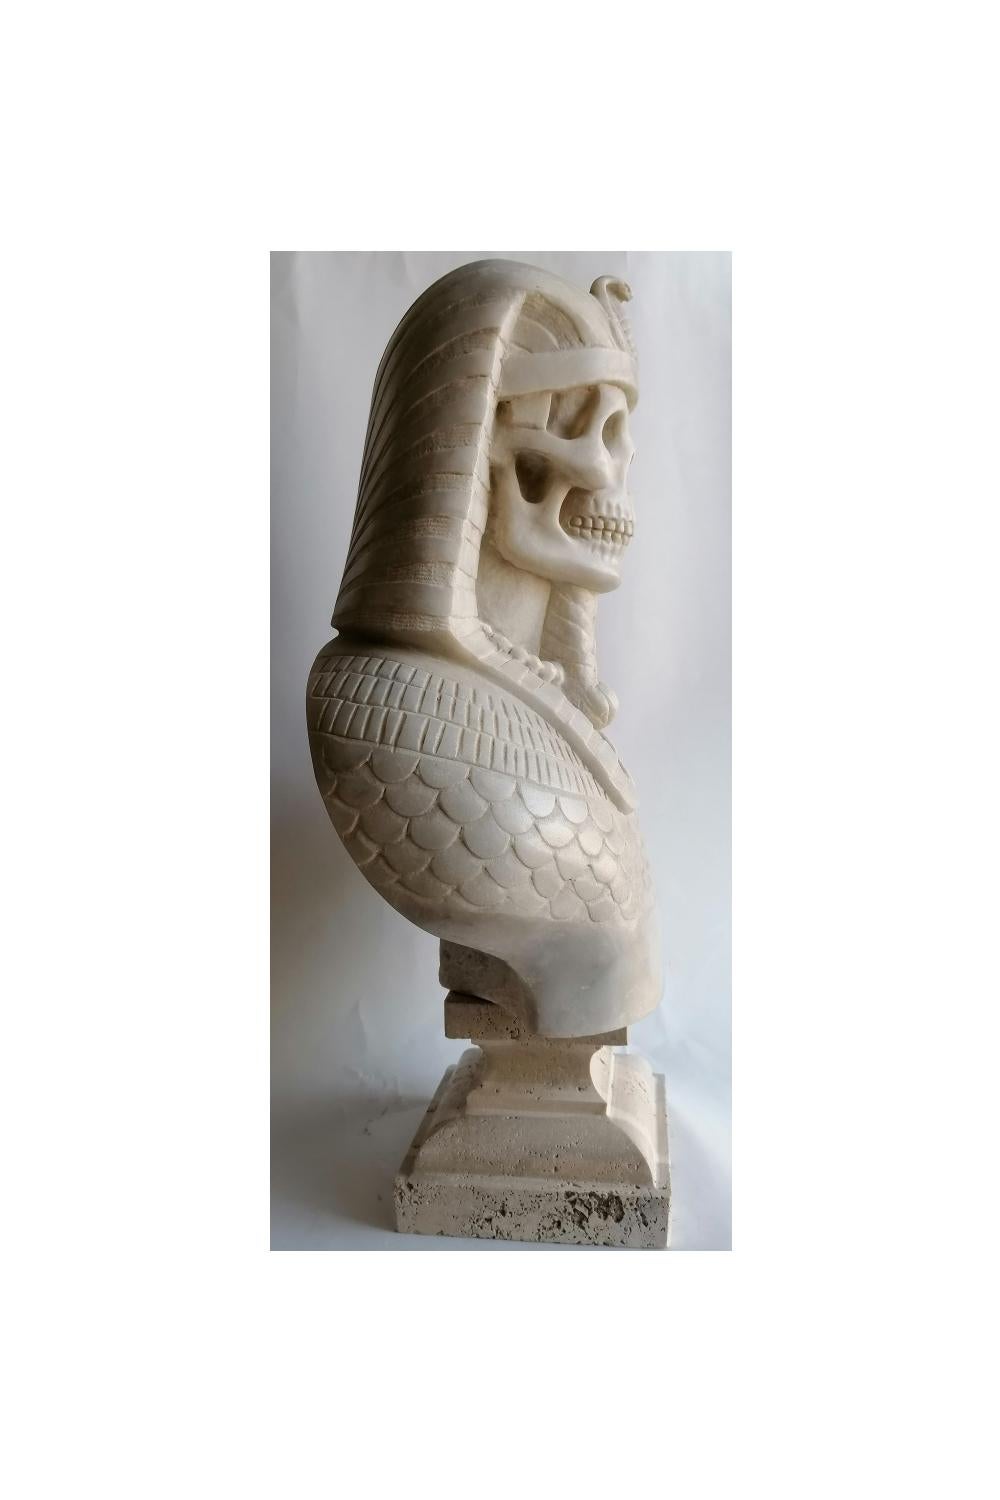 Italian Busto di faraone egizio, (memento- vanitas ) scolpito su marmo bianco di Carrara For Sale